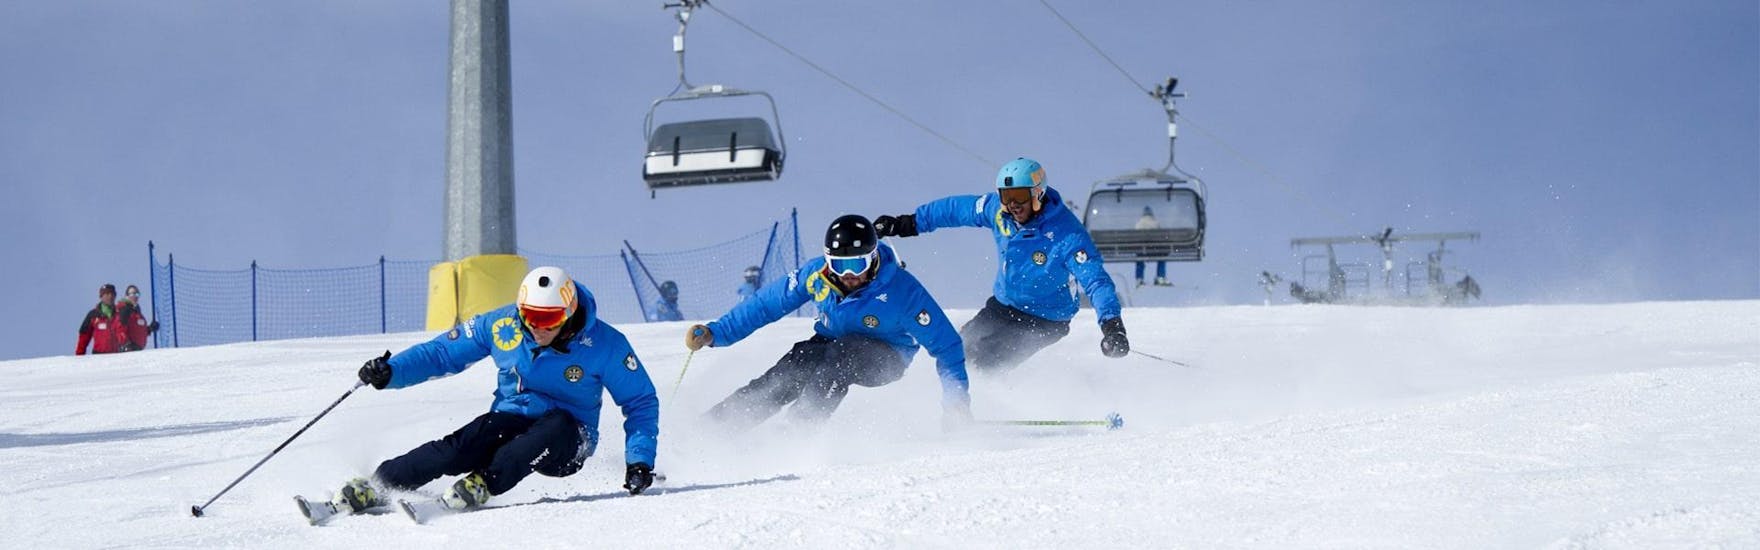 Drie skiërs dalen van de piste af dankzij de technieken die zij geleerd hebben tijdens de Privé Skilessen voor Volwassenen - Alle Niveaus bij de skischool Scuola di Sci Azzurra Livigno.